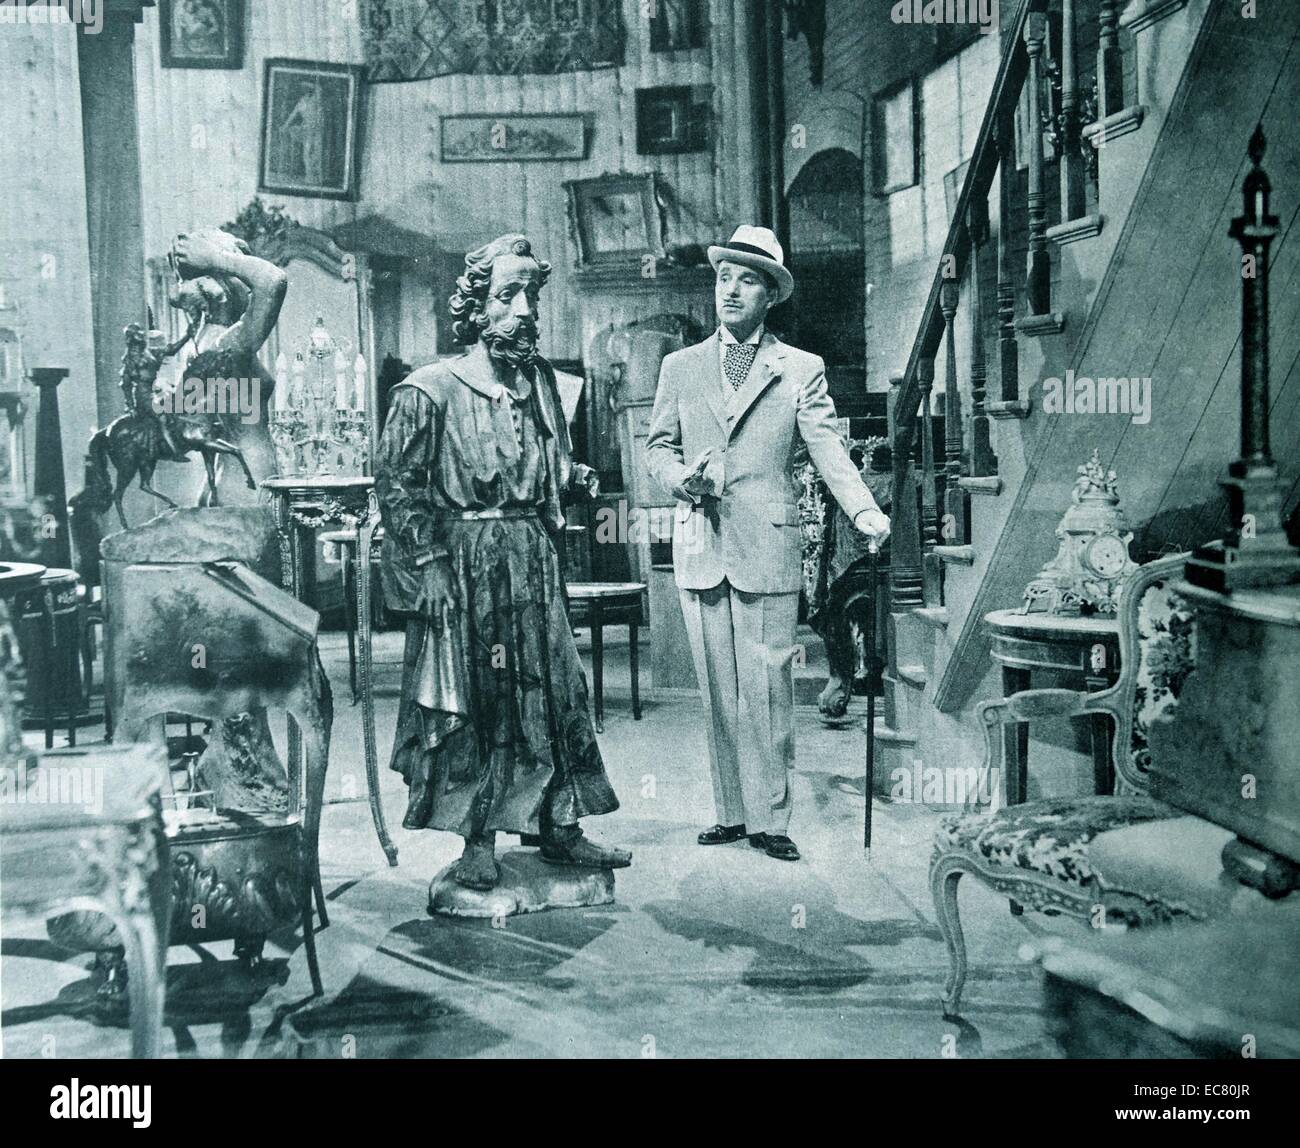 Monsieur Verdoux, 1947. Charles Chaplin pénétrant dans son 'comédie de meurtre". Banque D'Images